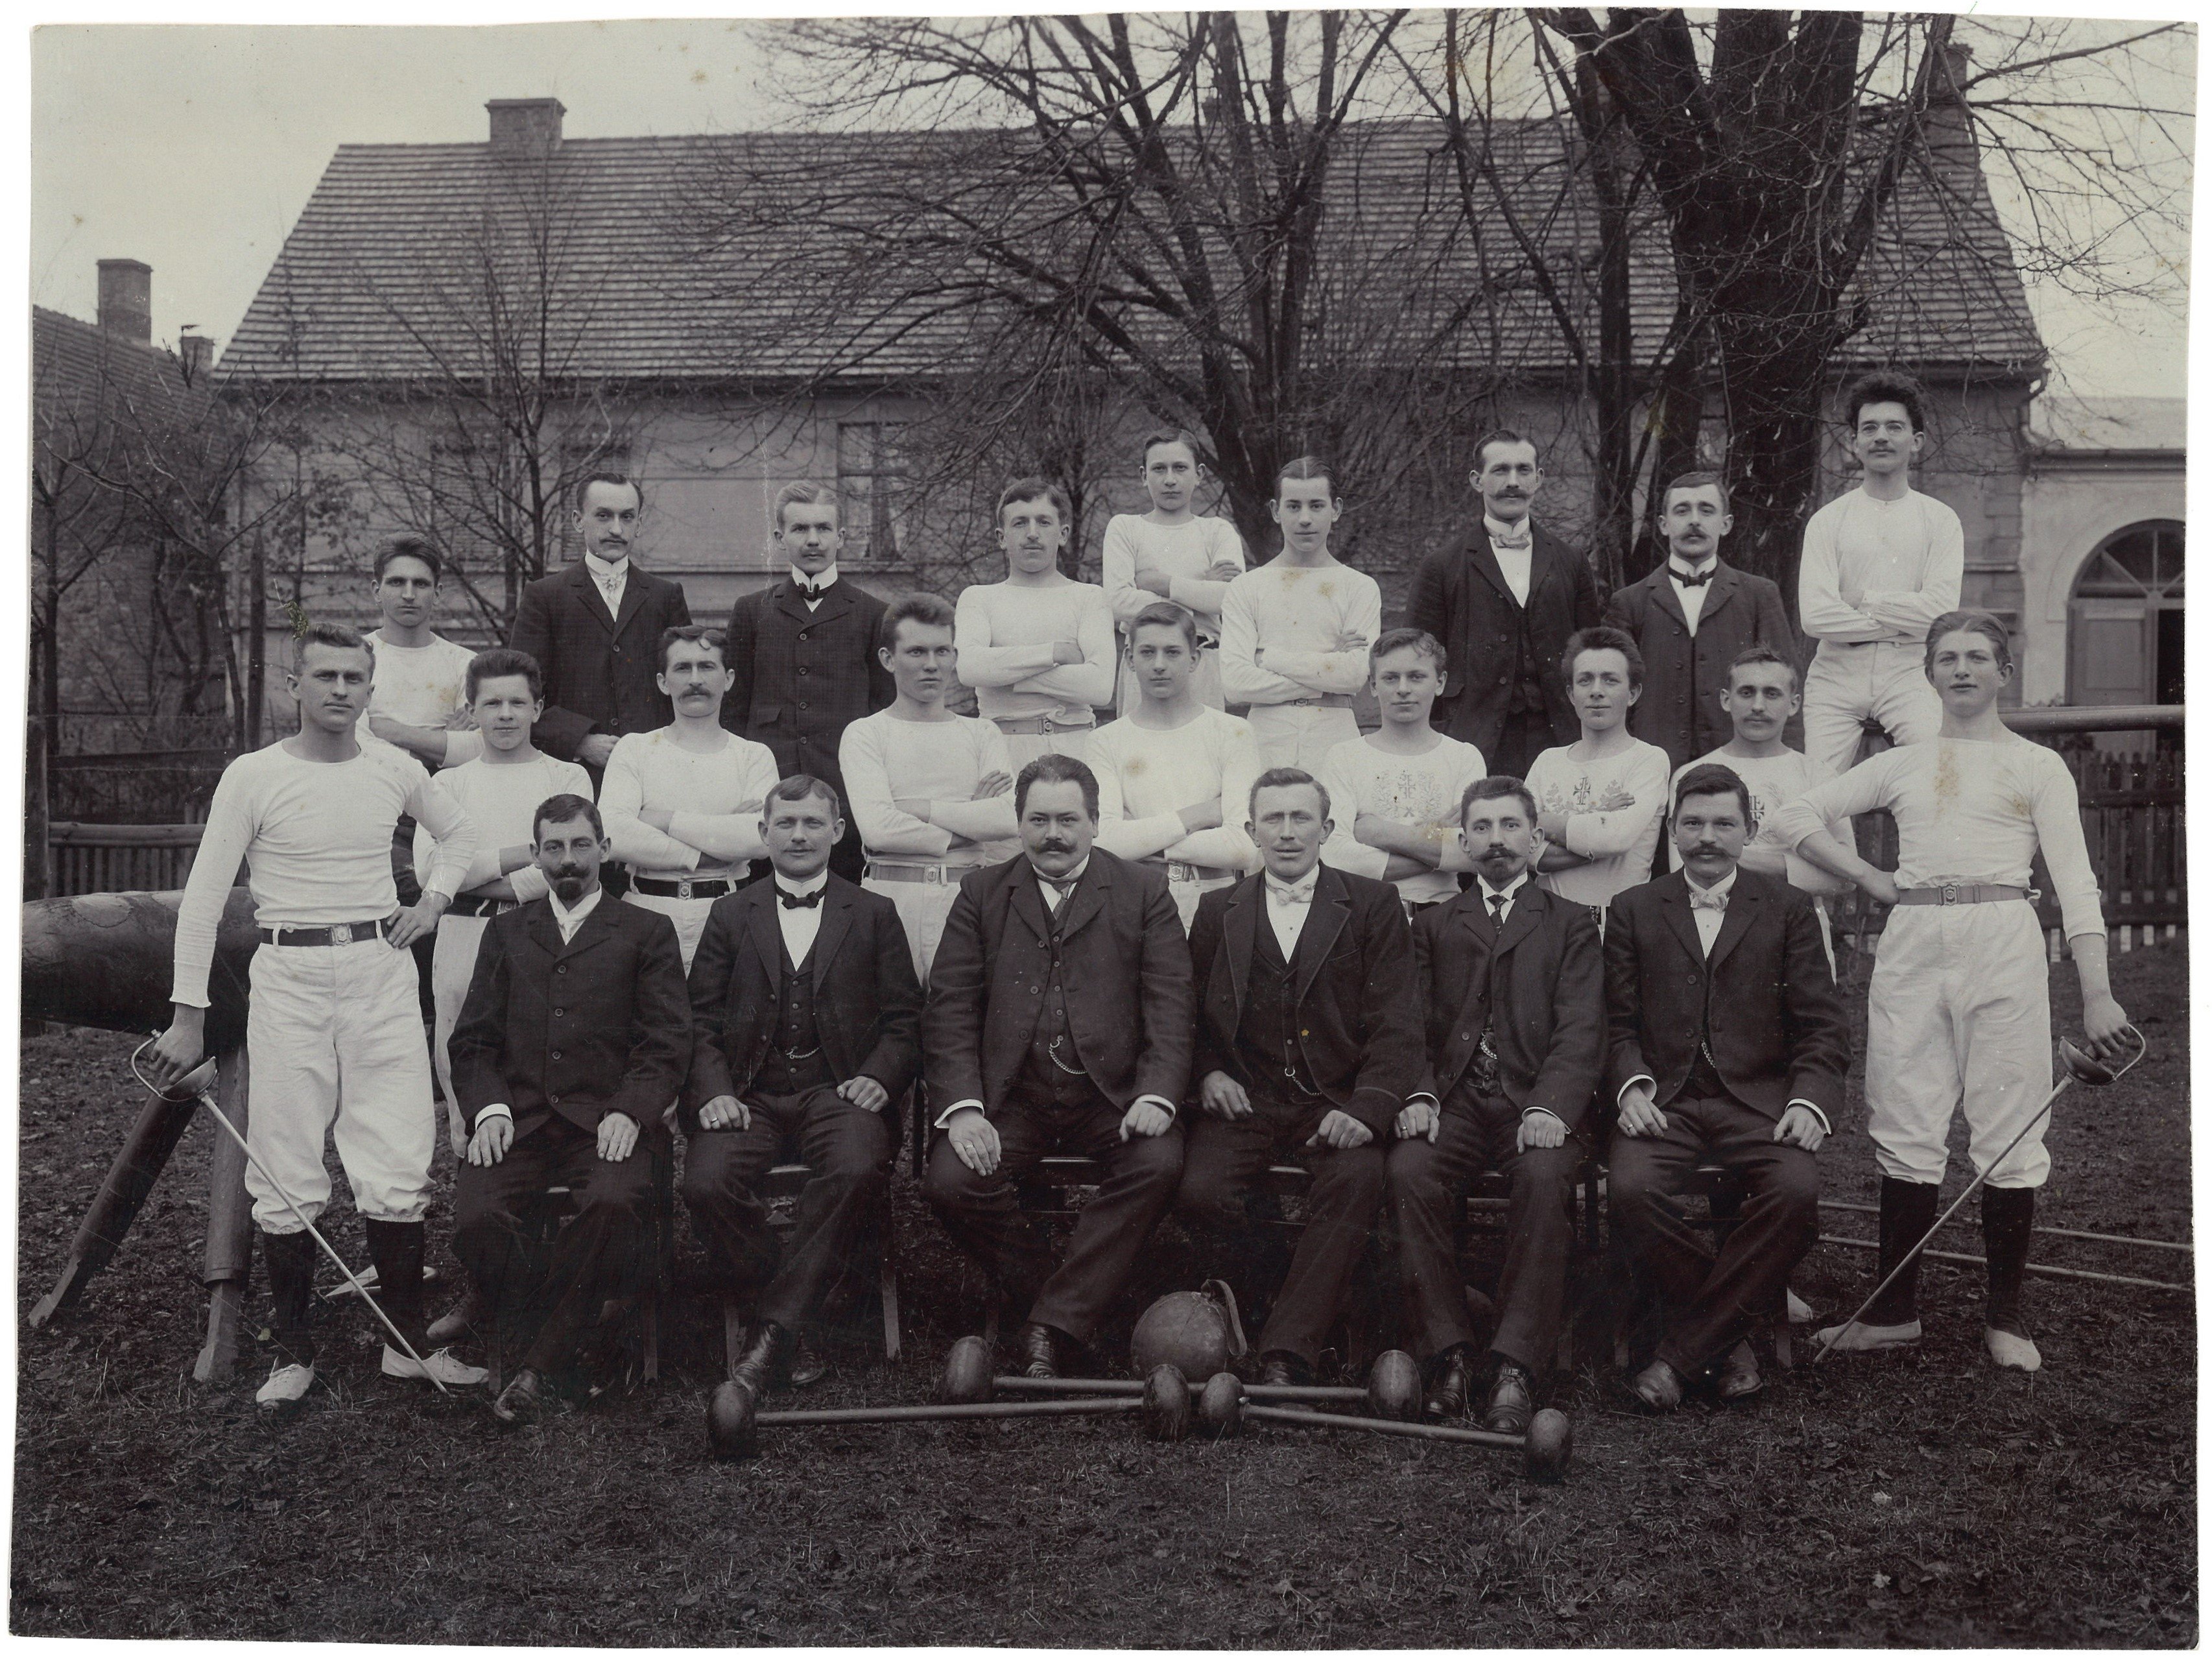 Groß Särchen: Turnverein um 1900/10 (Landesgeschichtliche Vereinigung für die Mark Brandenburg e.V., Archiv CC BY)